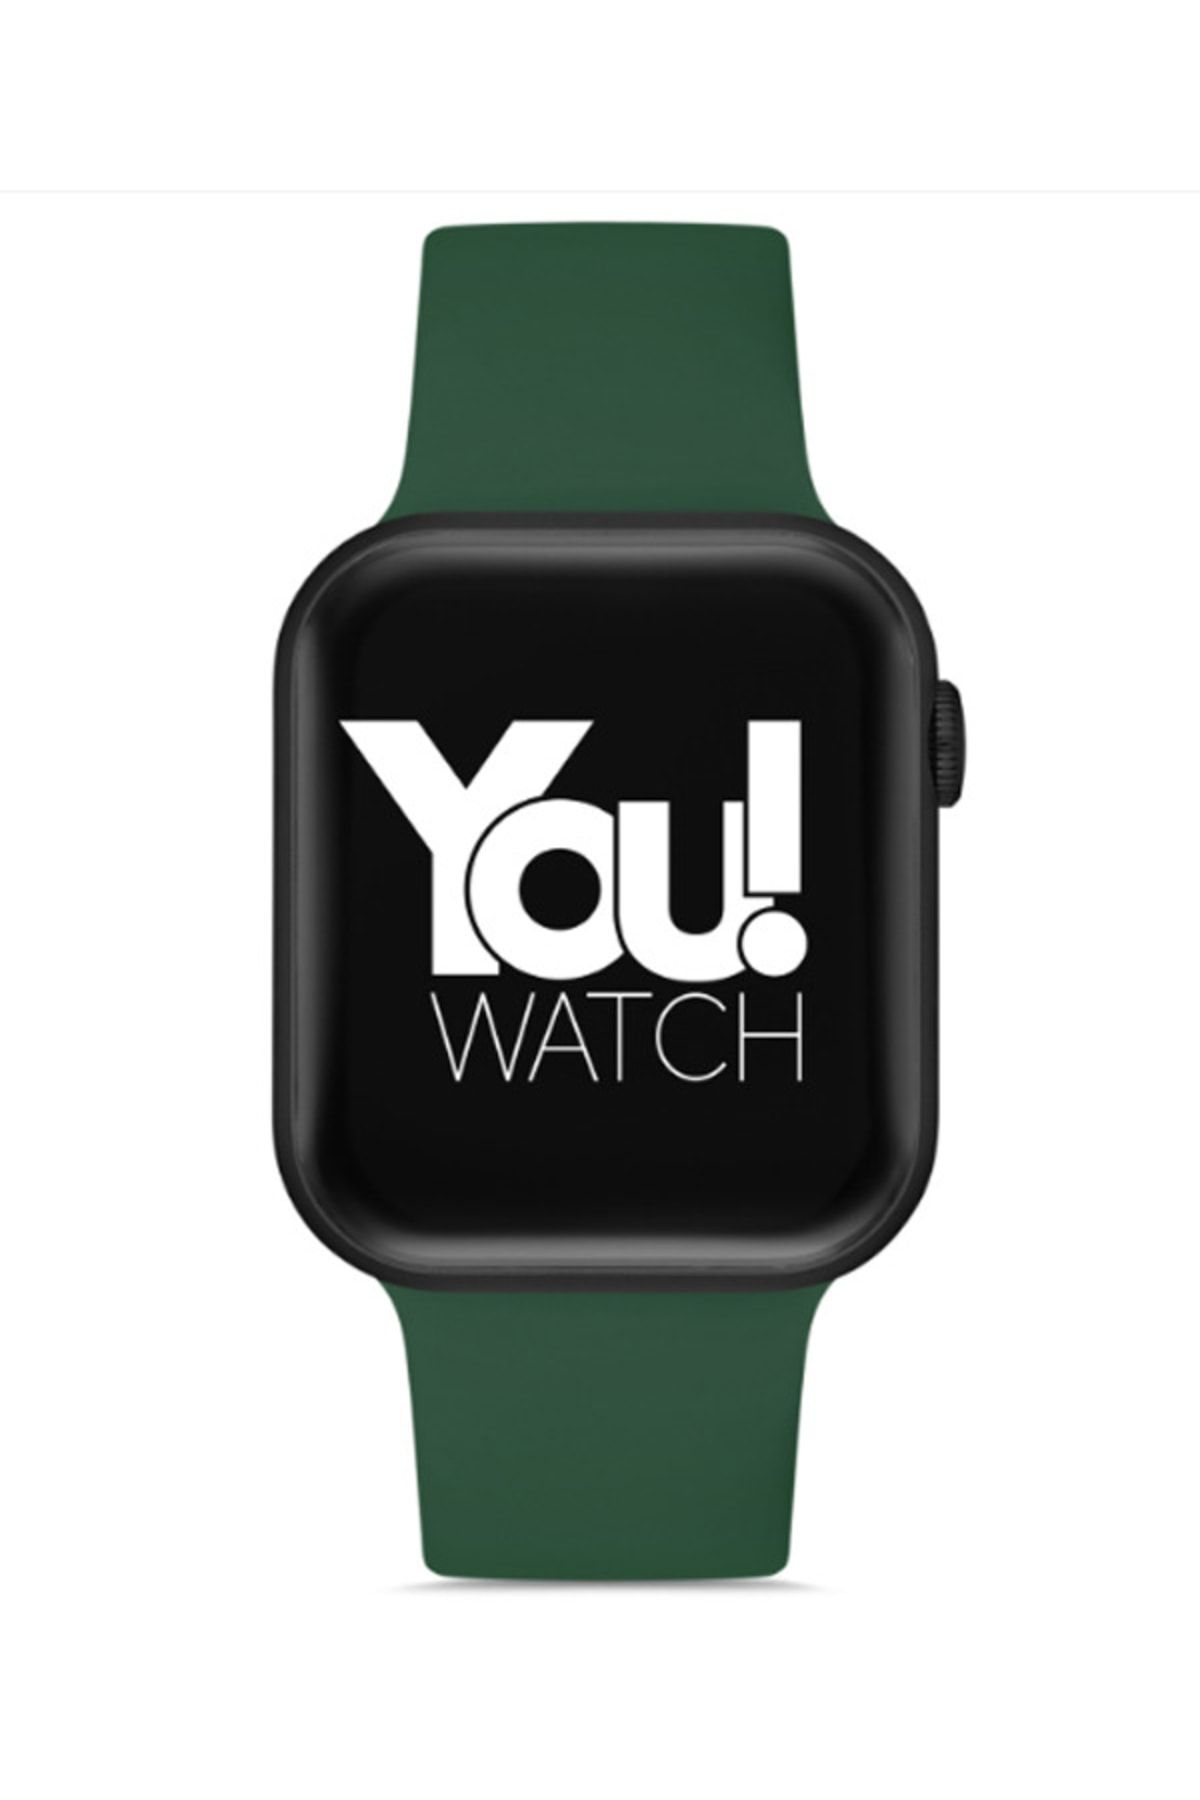 You Watch Youwatch F3-yf310 T Siyah Kasa & Yeşil Silikon Kordon Akıllı Saat Ios Ve Android Uyumludur.